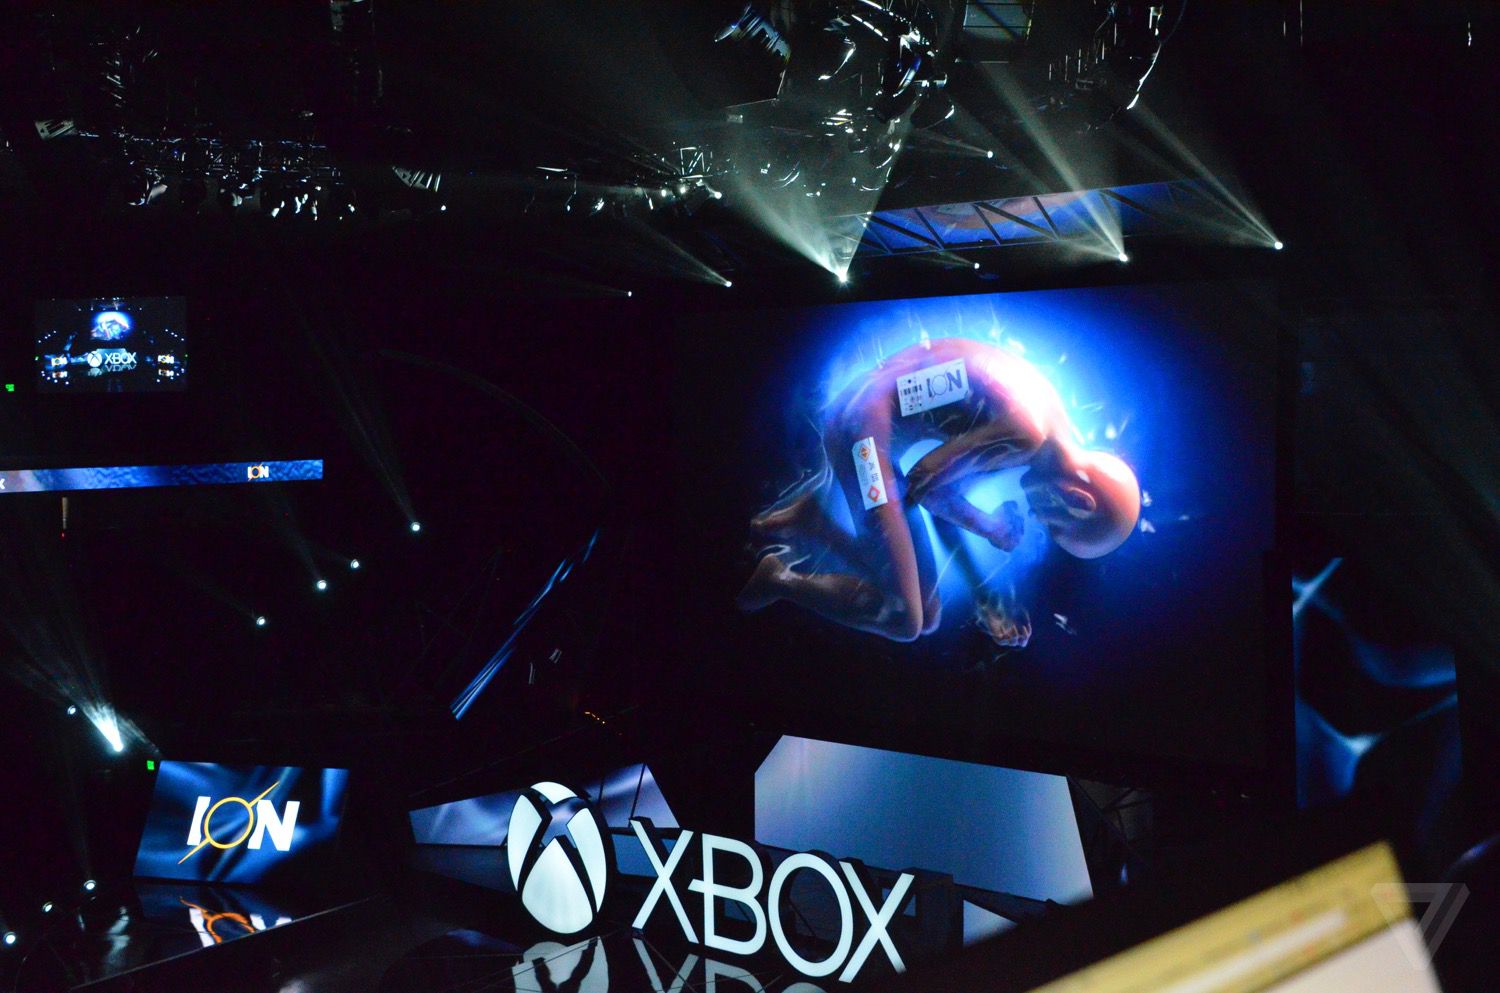 Microsoft E3